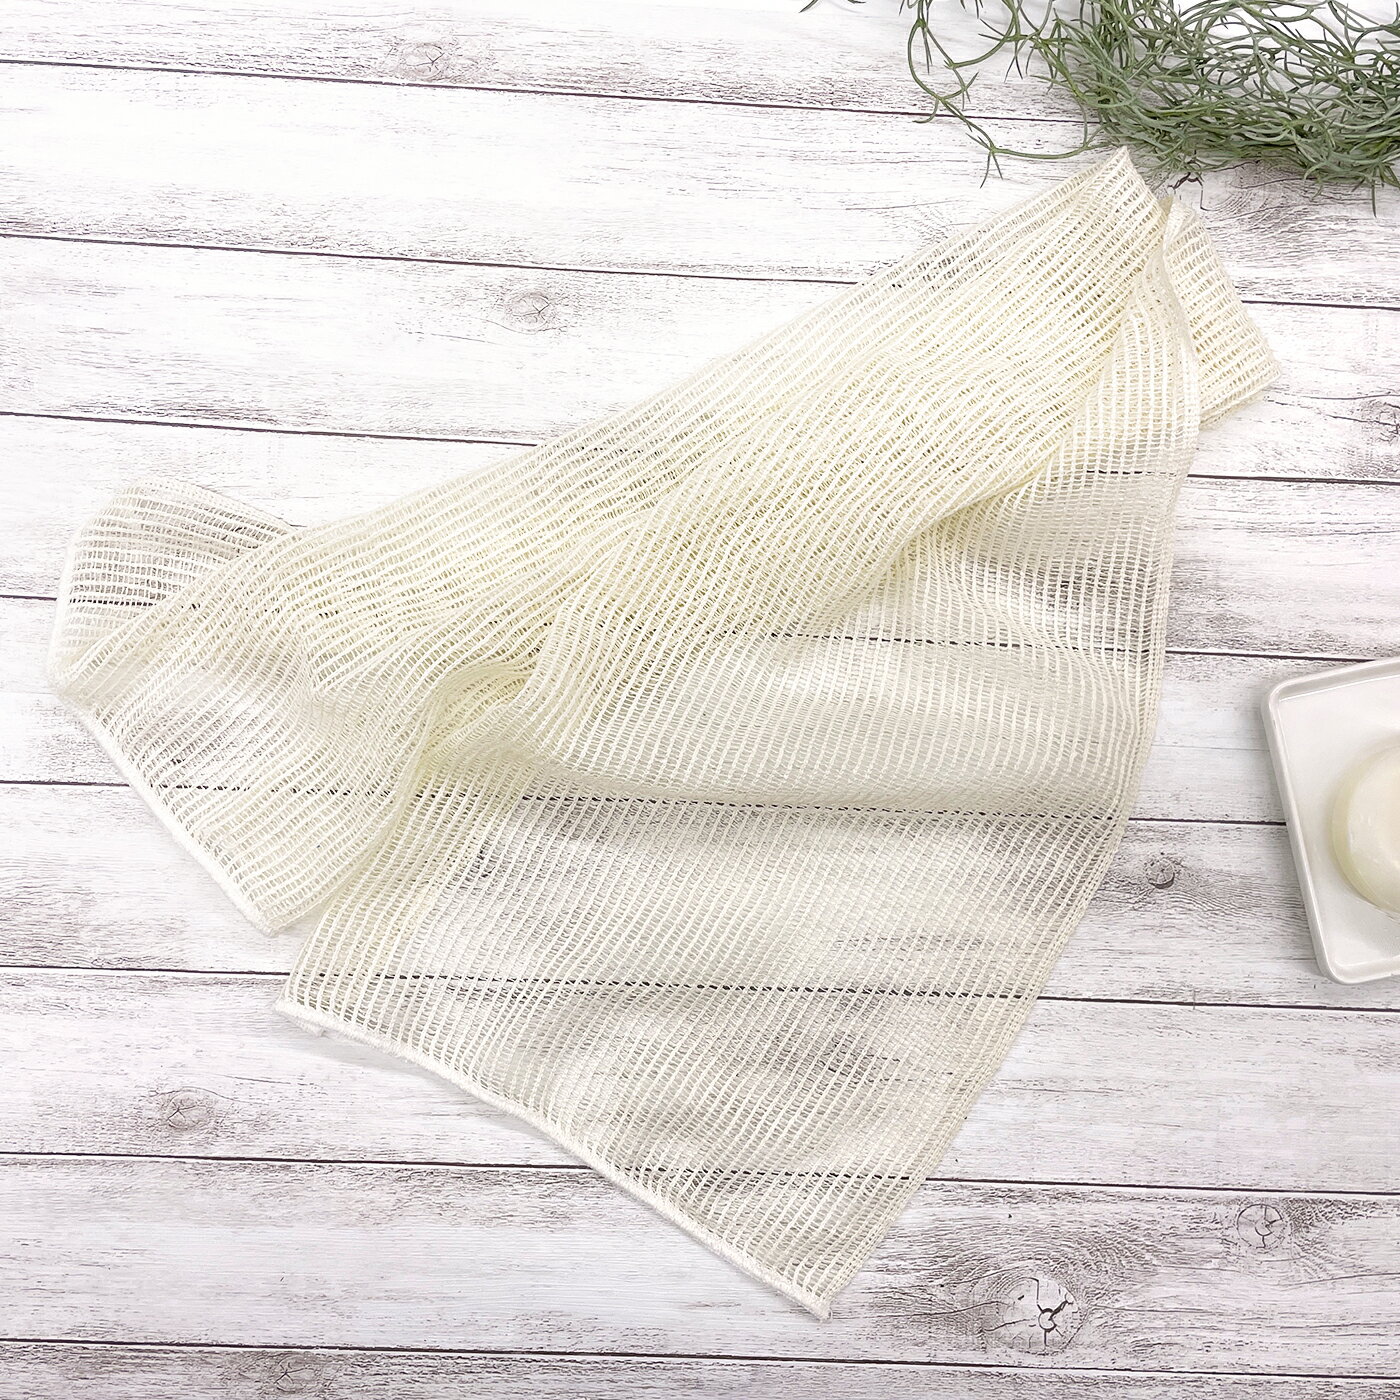 シルク メッシュ ボディタオル 27×100cm 絹100% 日本製 あかすり 浴用タオル ピーリング 角質除去 美肌 乾燥肌 敏感肌 保湿効果